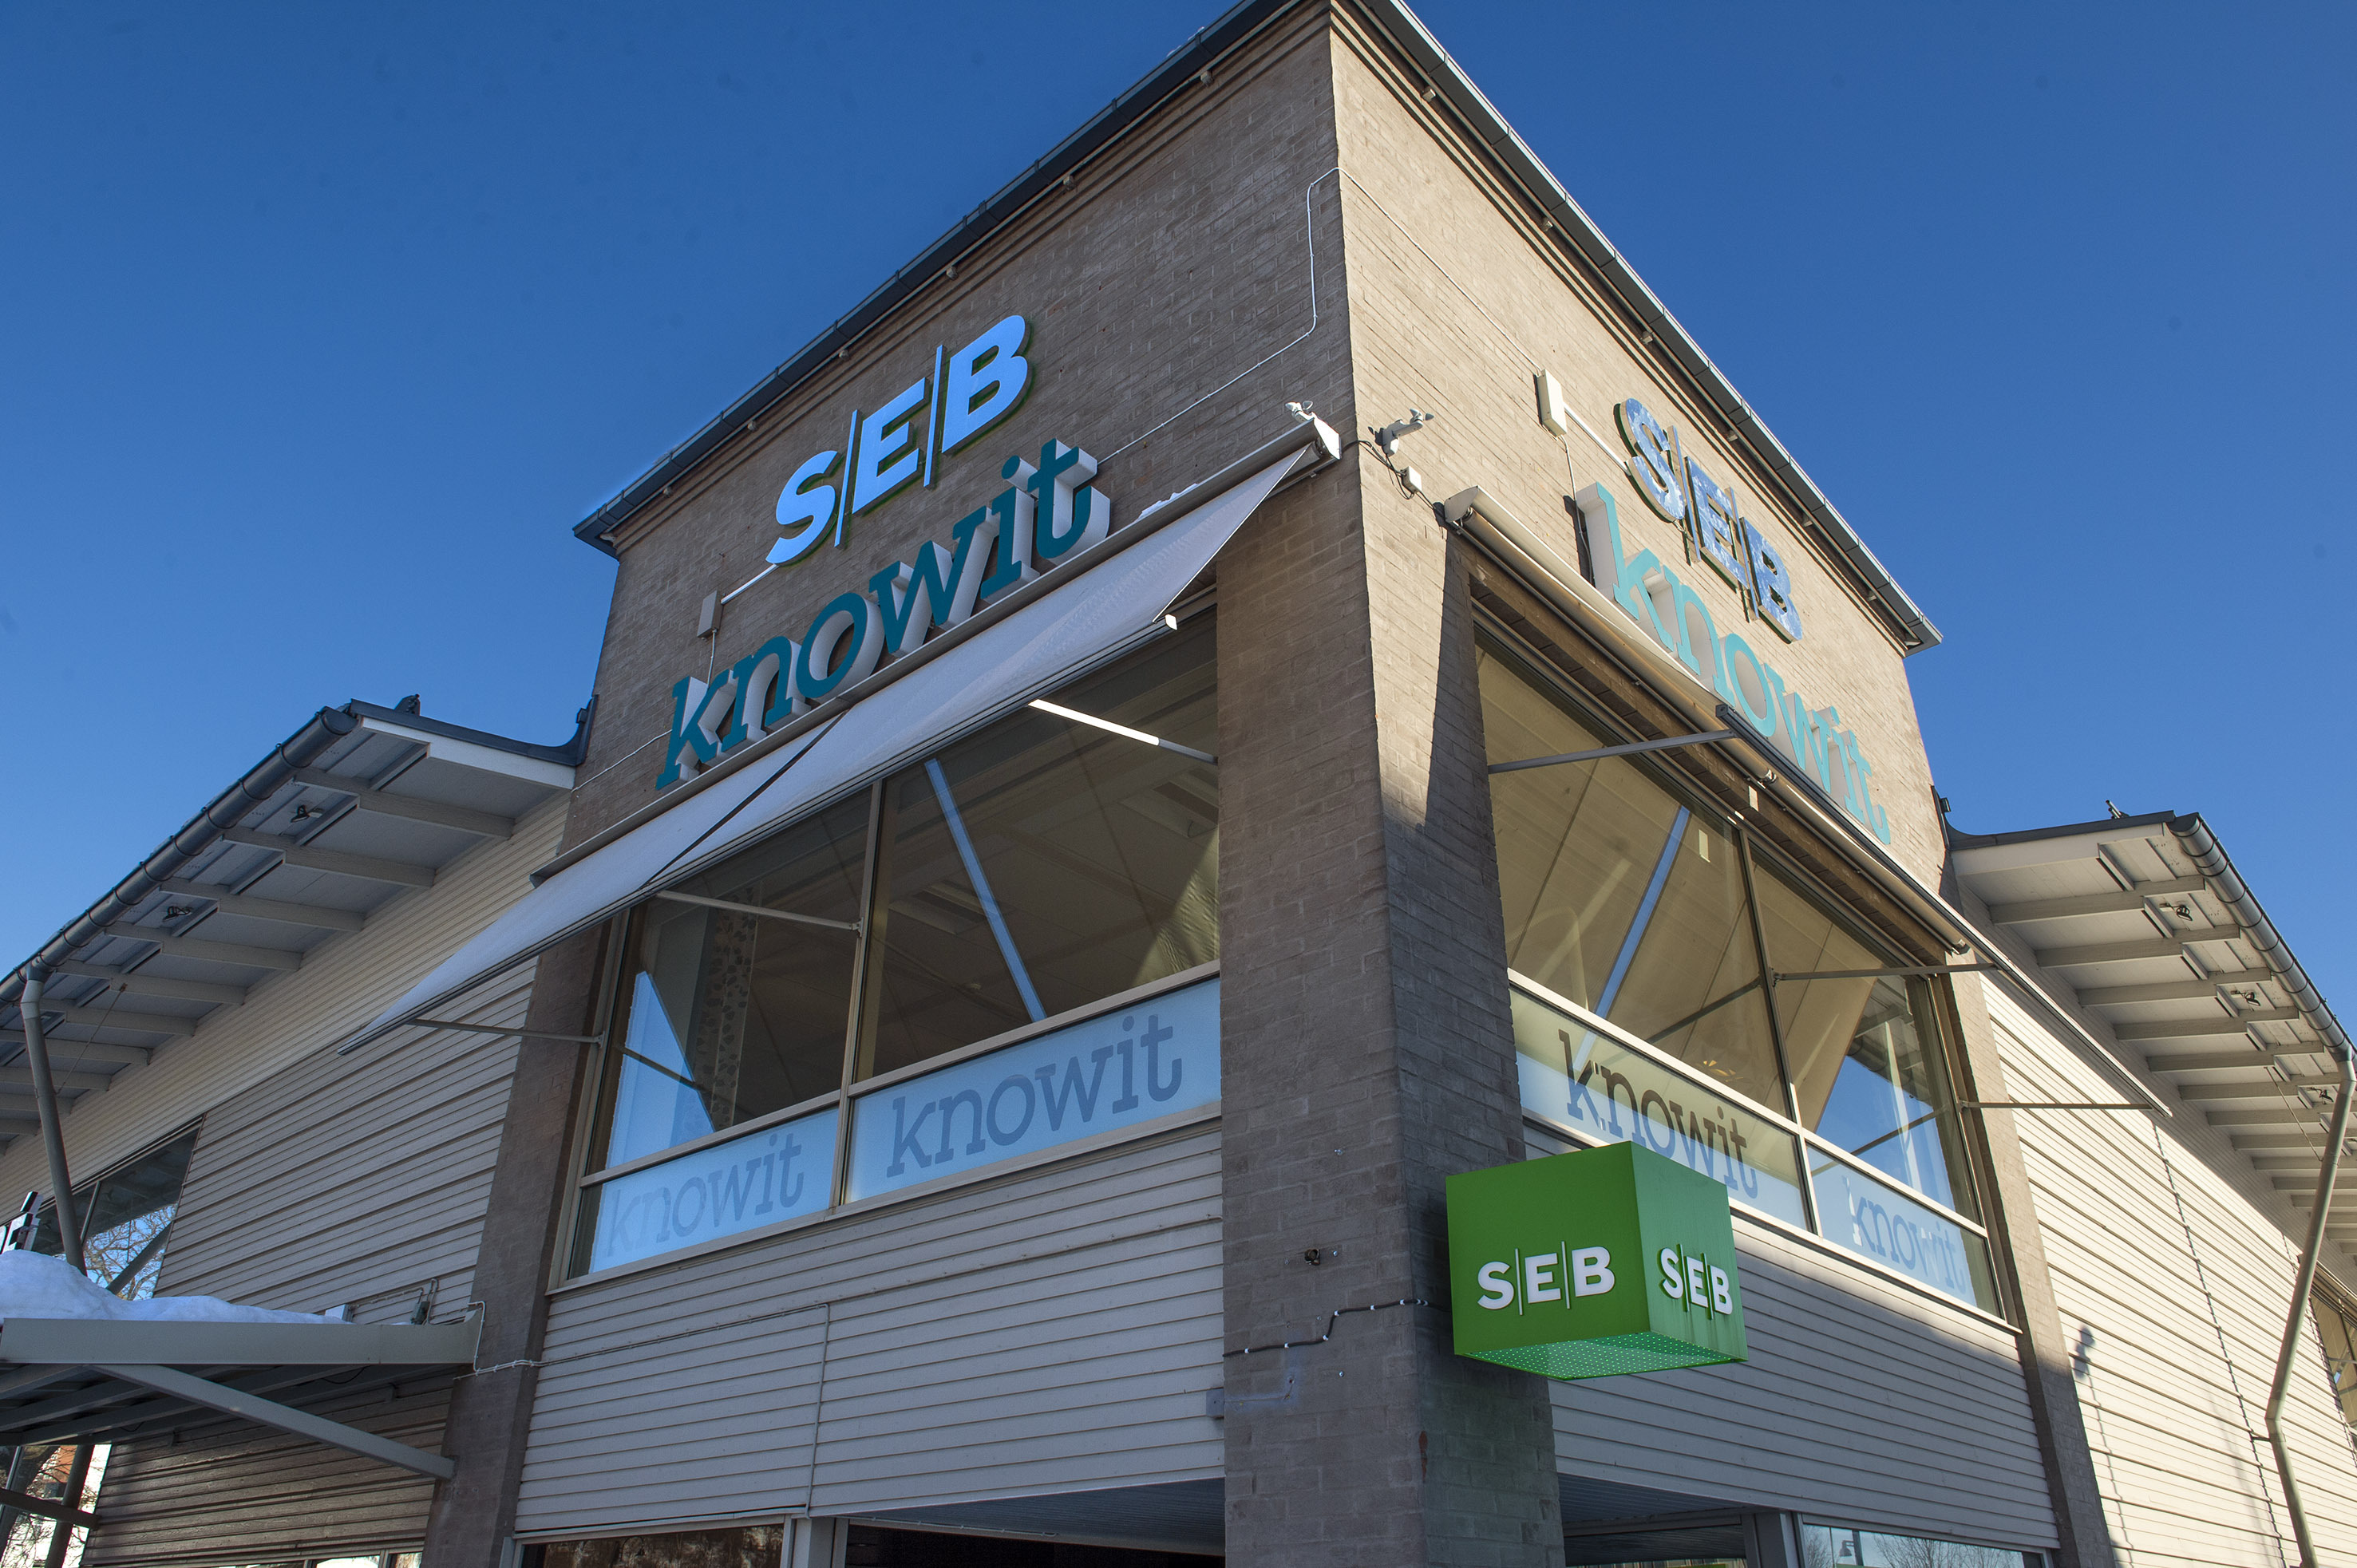 SEB stänger sin kundservice i Sundsvall u2013 30-tal anställda berörs 